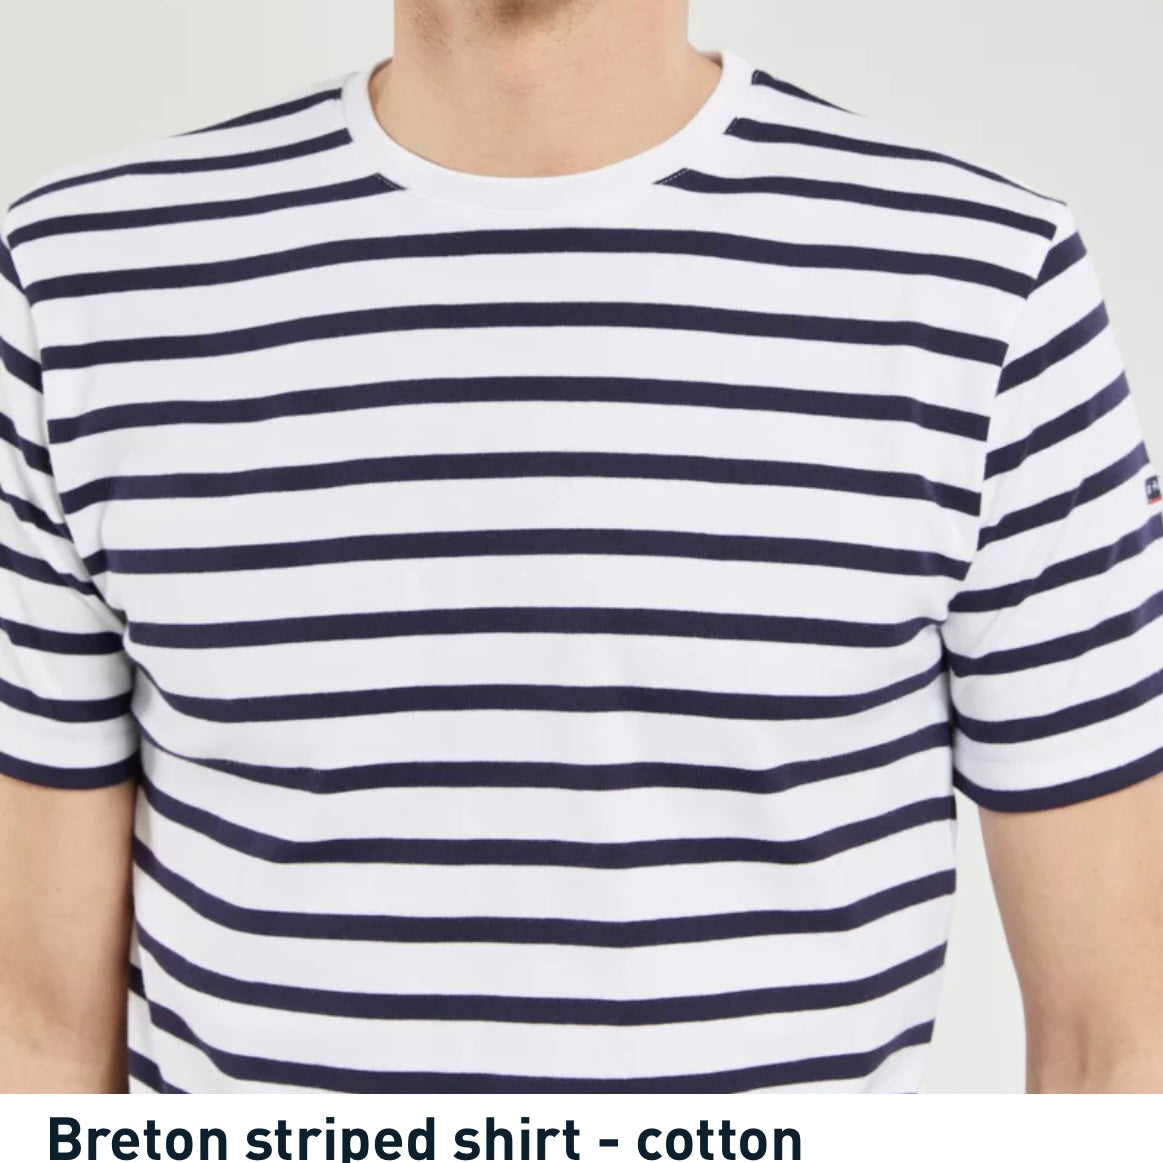 Armor-Lux Breton T Shirt.